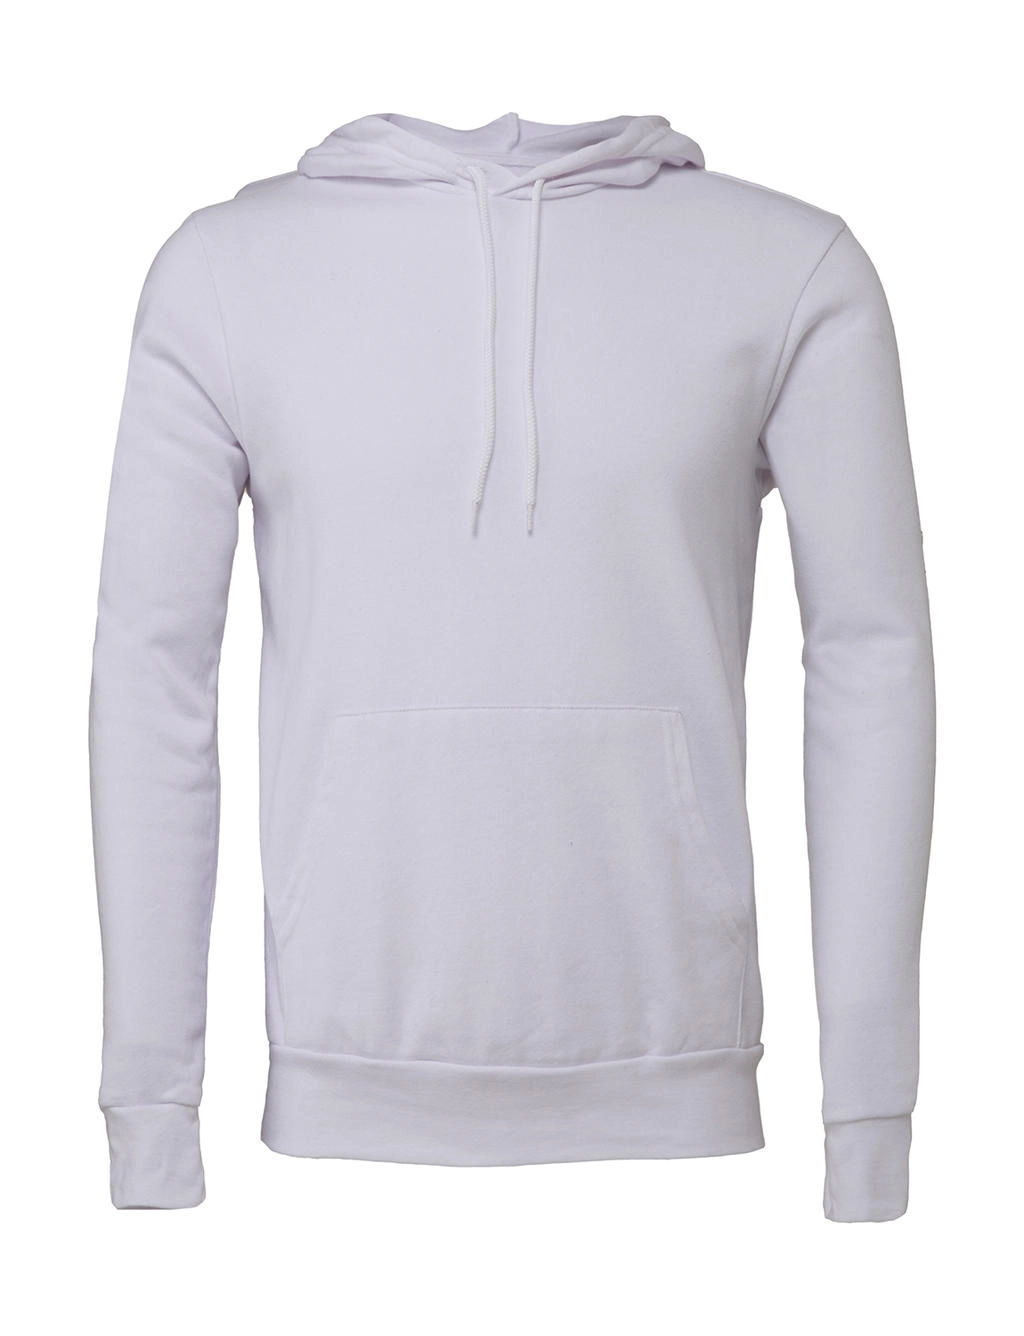 Unisex Poly-Cotton Pullover Hoodie zum Besticken und Bedrucken in der Farbe White mit Ihren Logo, Schriftzug oder Motiv.